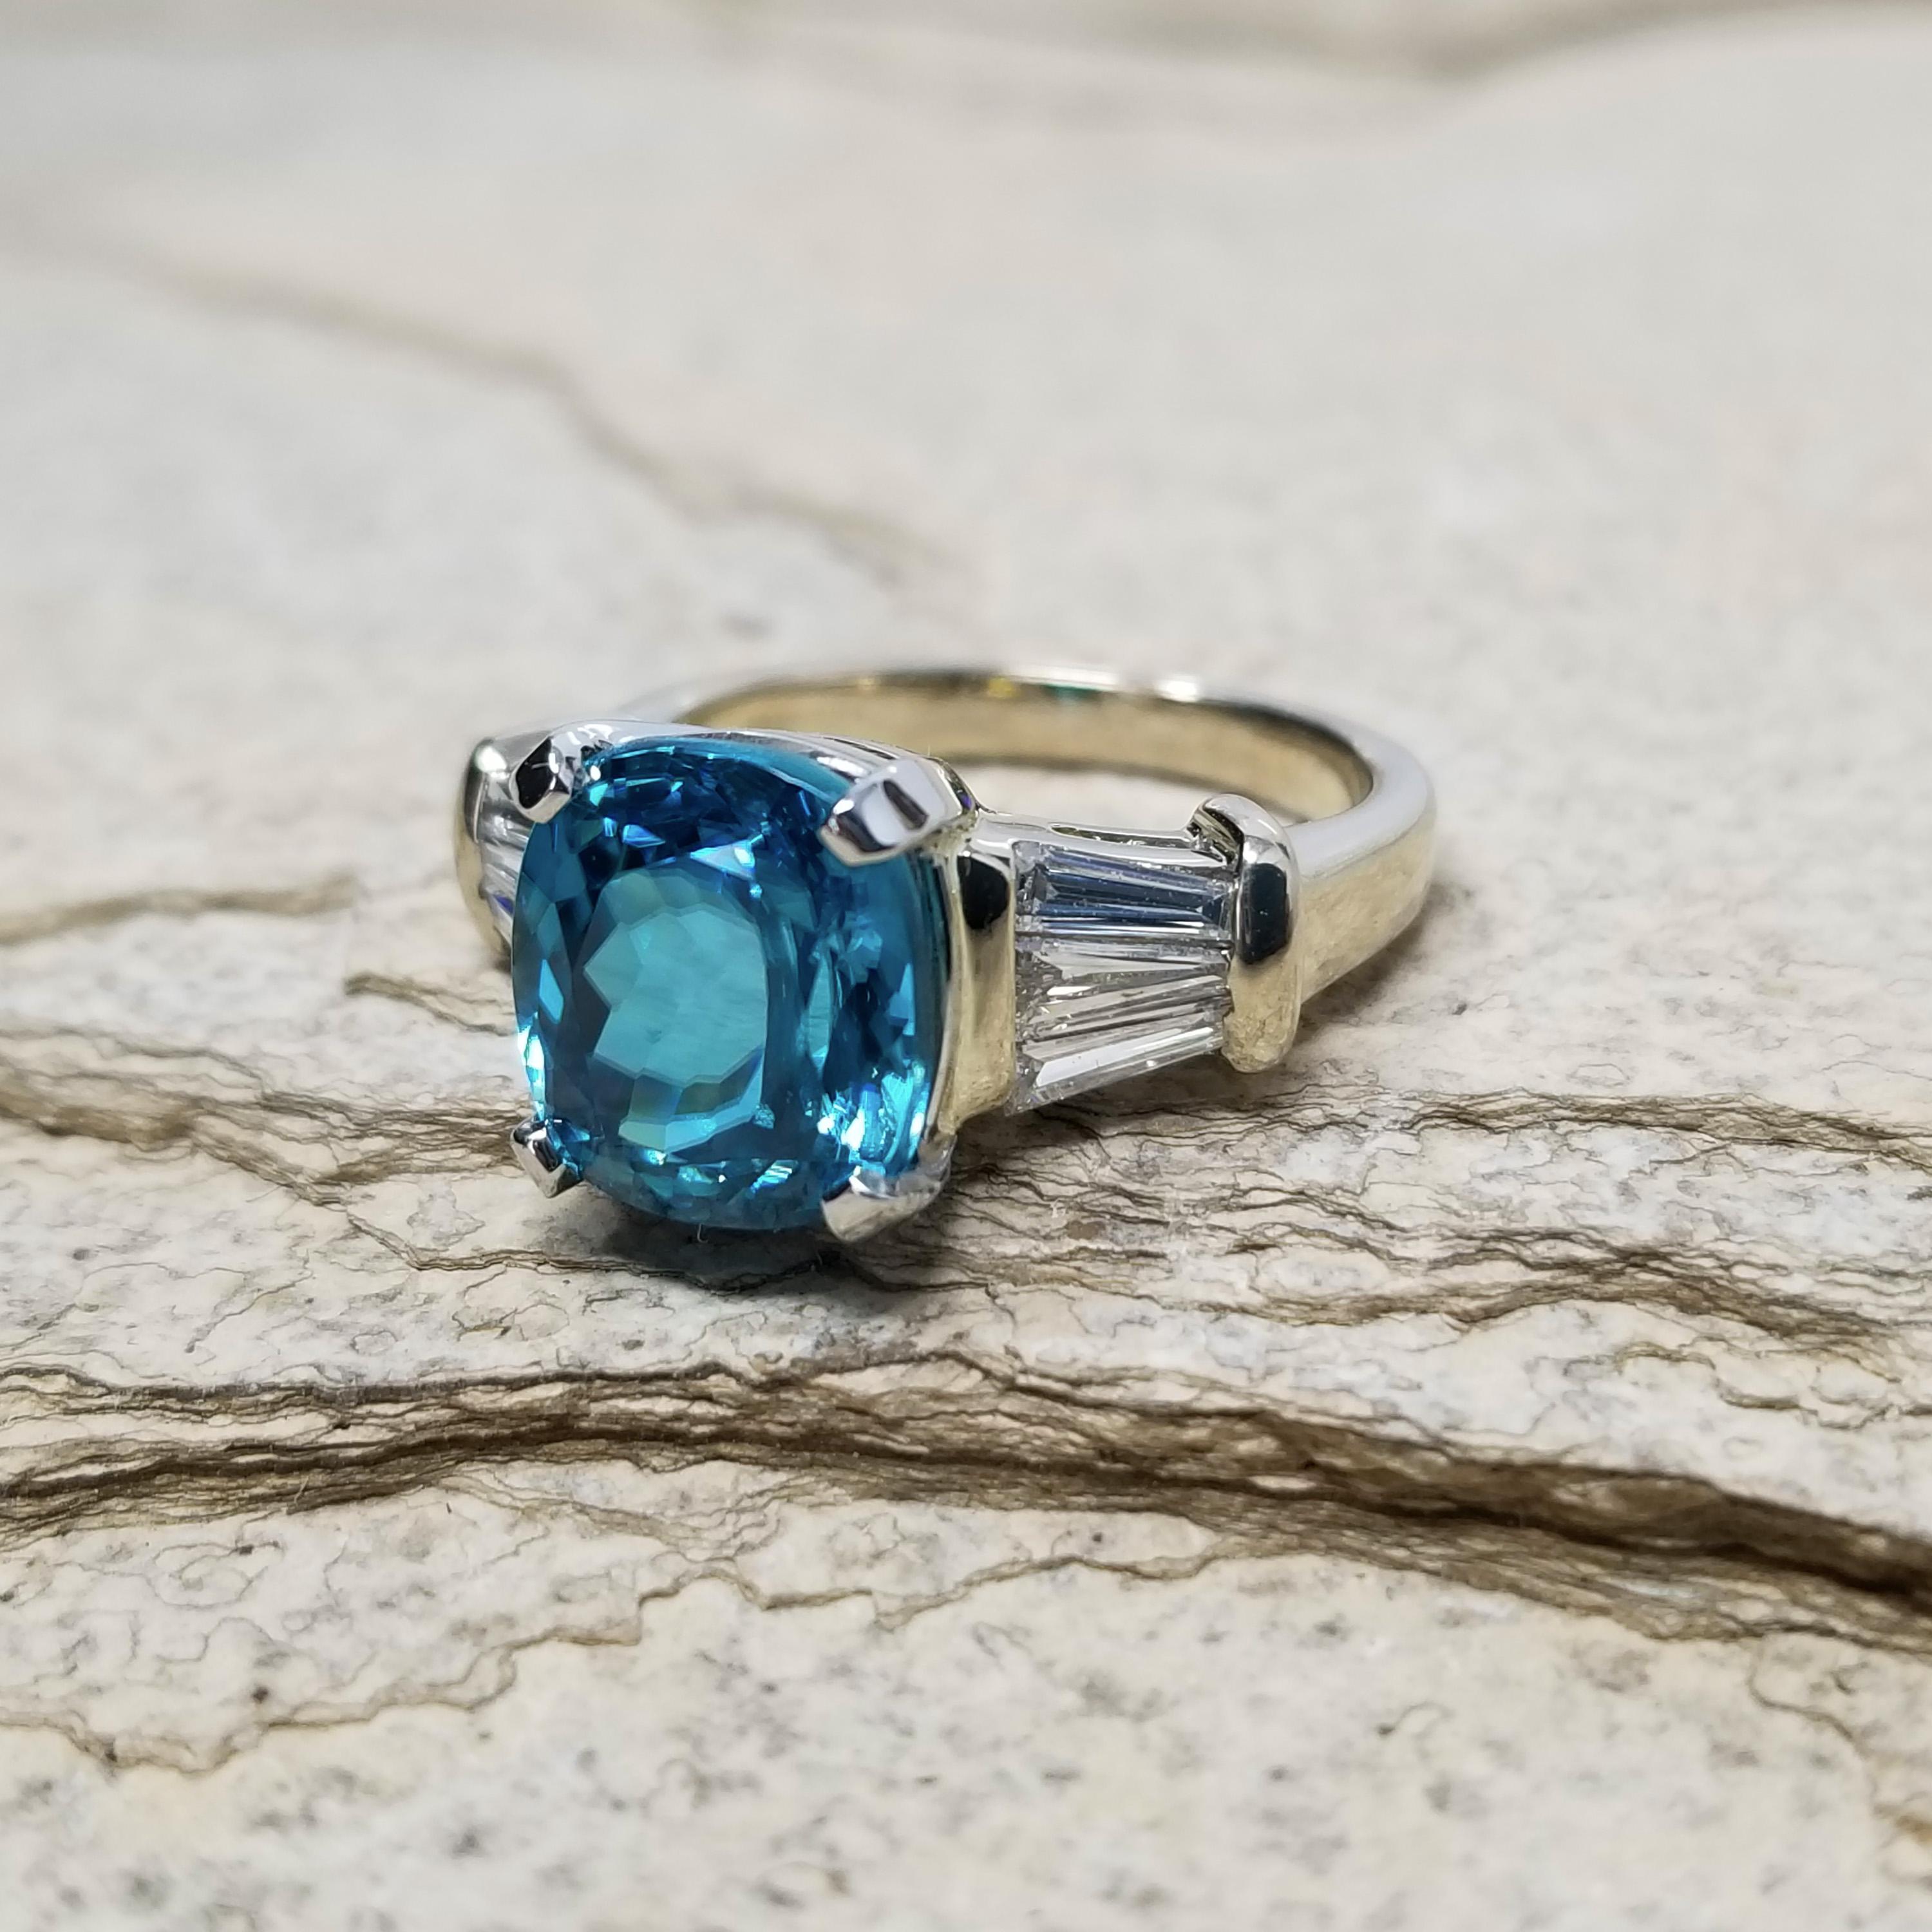 Ce zircon bleu du Cambodge a été taillé pour maximiser la brillance inhérente au zircon, et le résultat est absolument scintillant. Cette pierre précieuse éblouit par son riche bleu turquoise.

Cette bague en diamant est d'un style intemporel ; elle